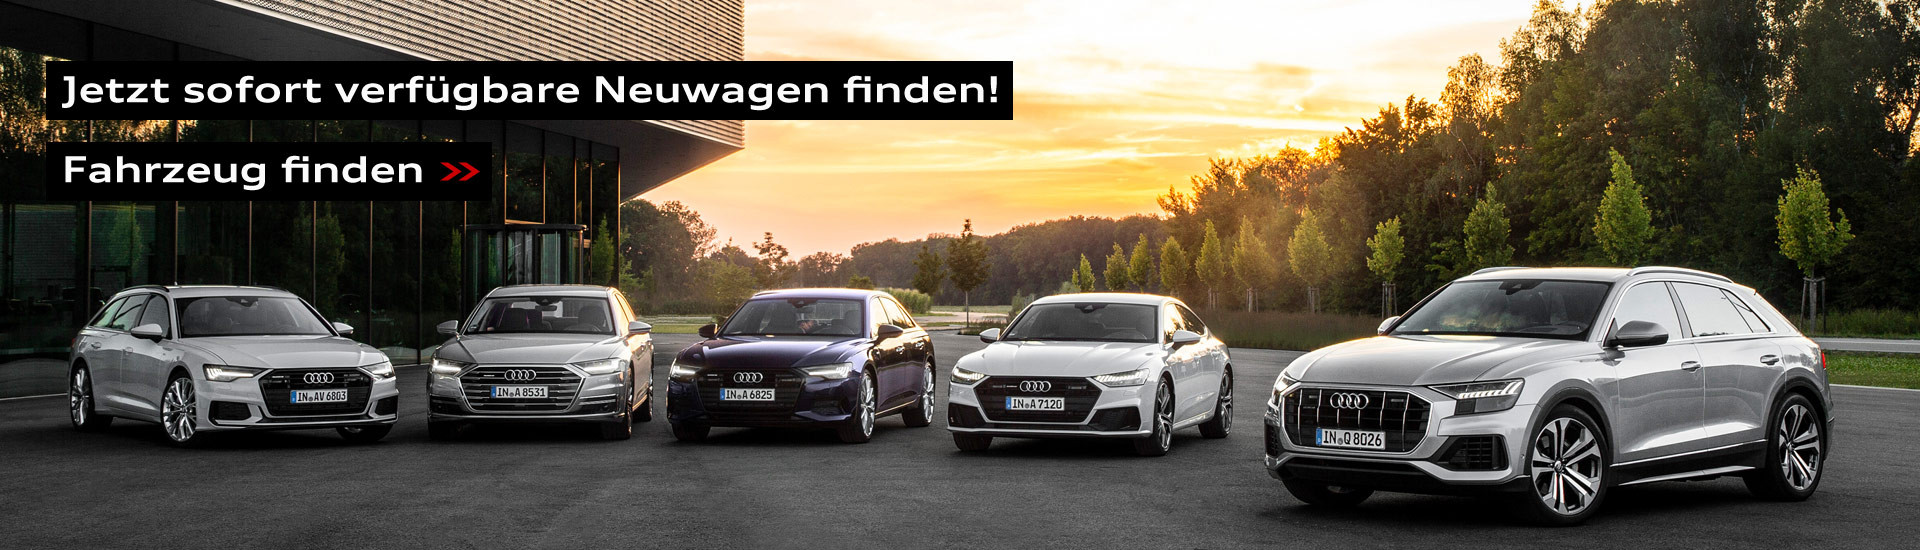 Slider-Audi-Neuwagen.jpg